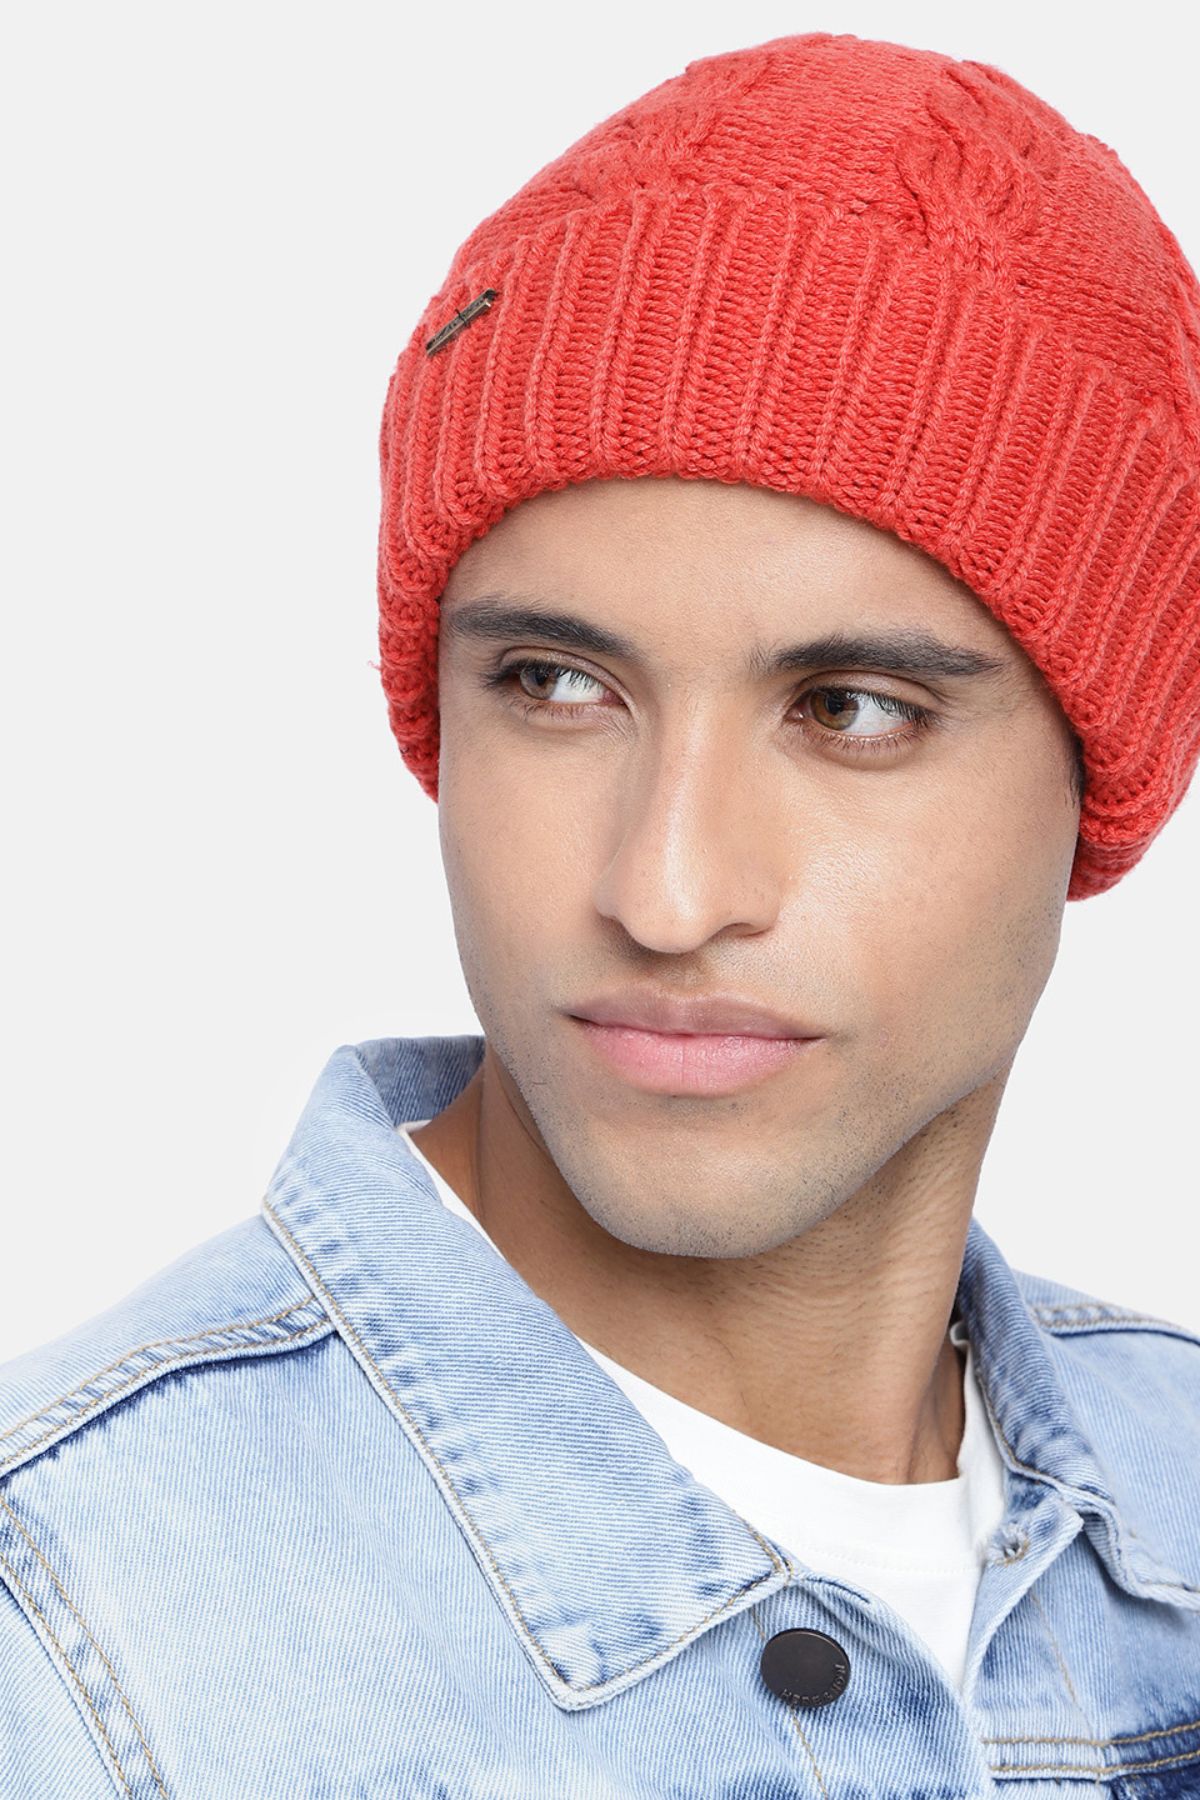 Kosha- Premium Winter Wear, Men's Wear, Winter Accessories